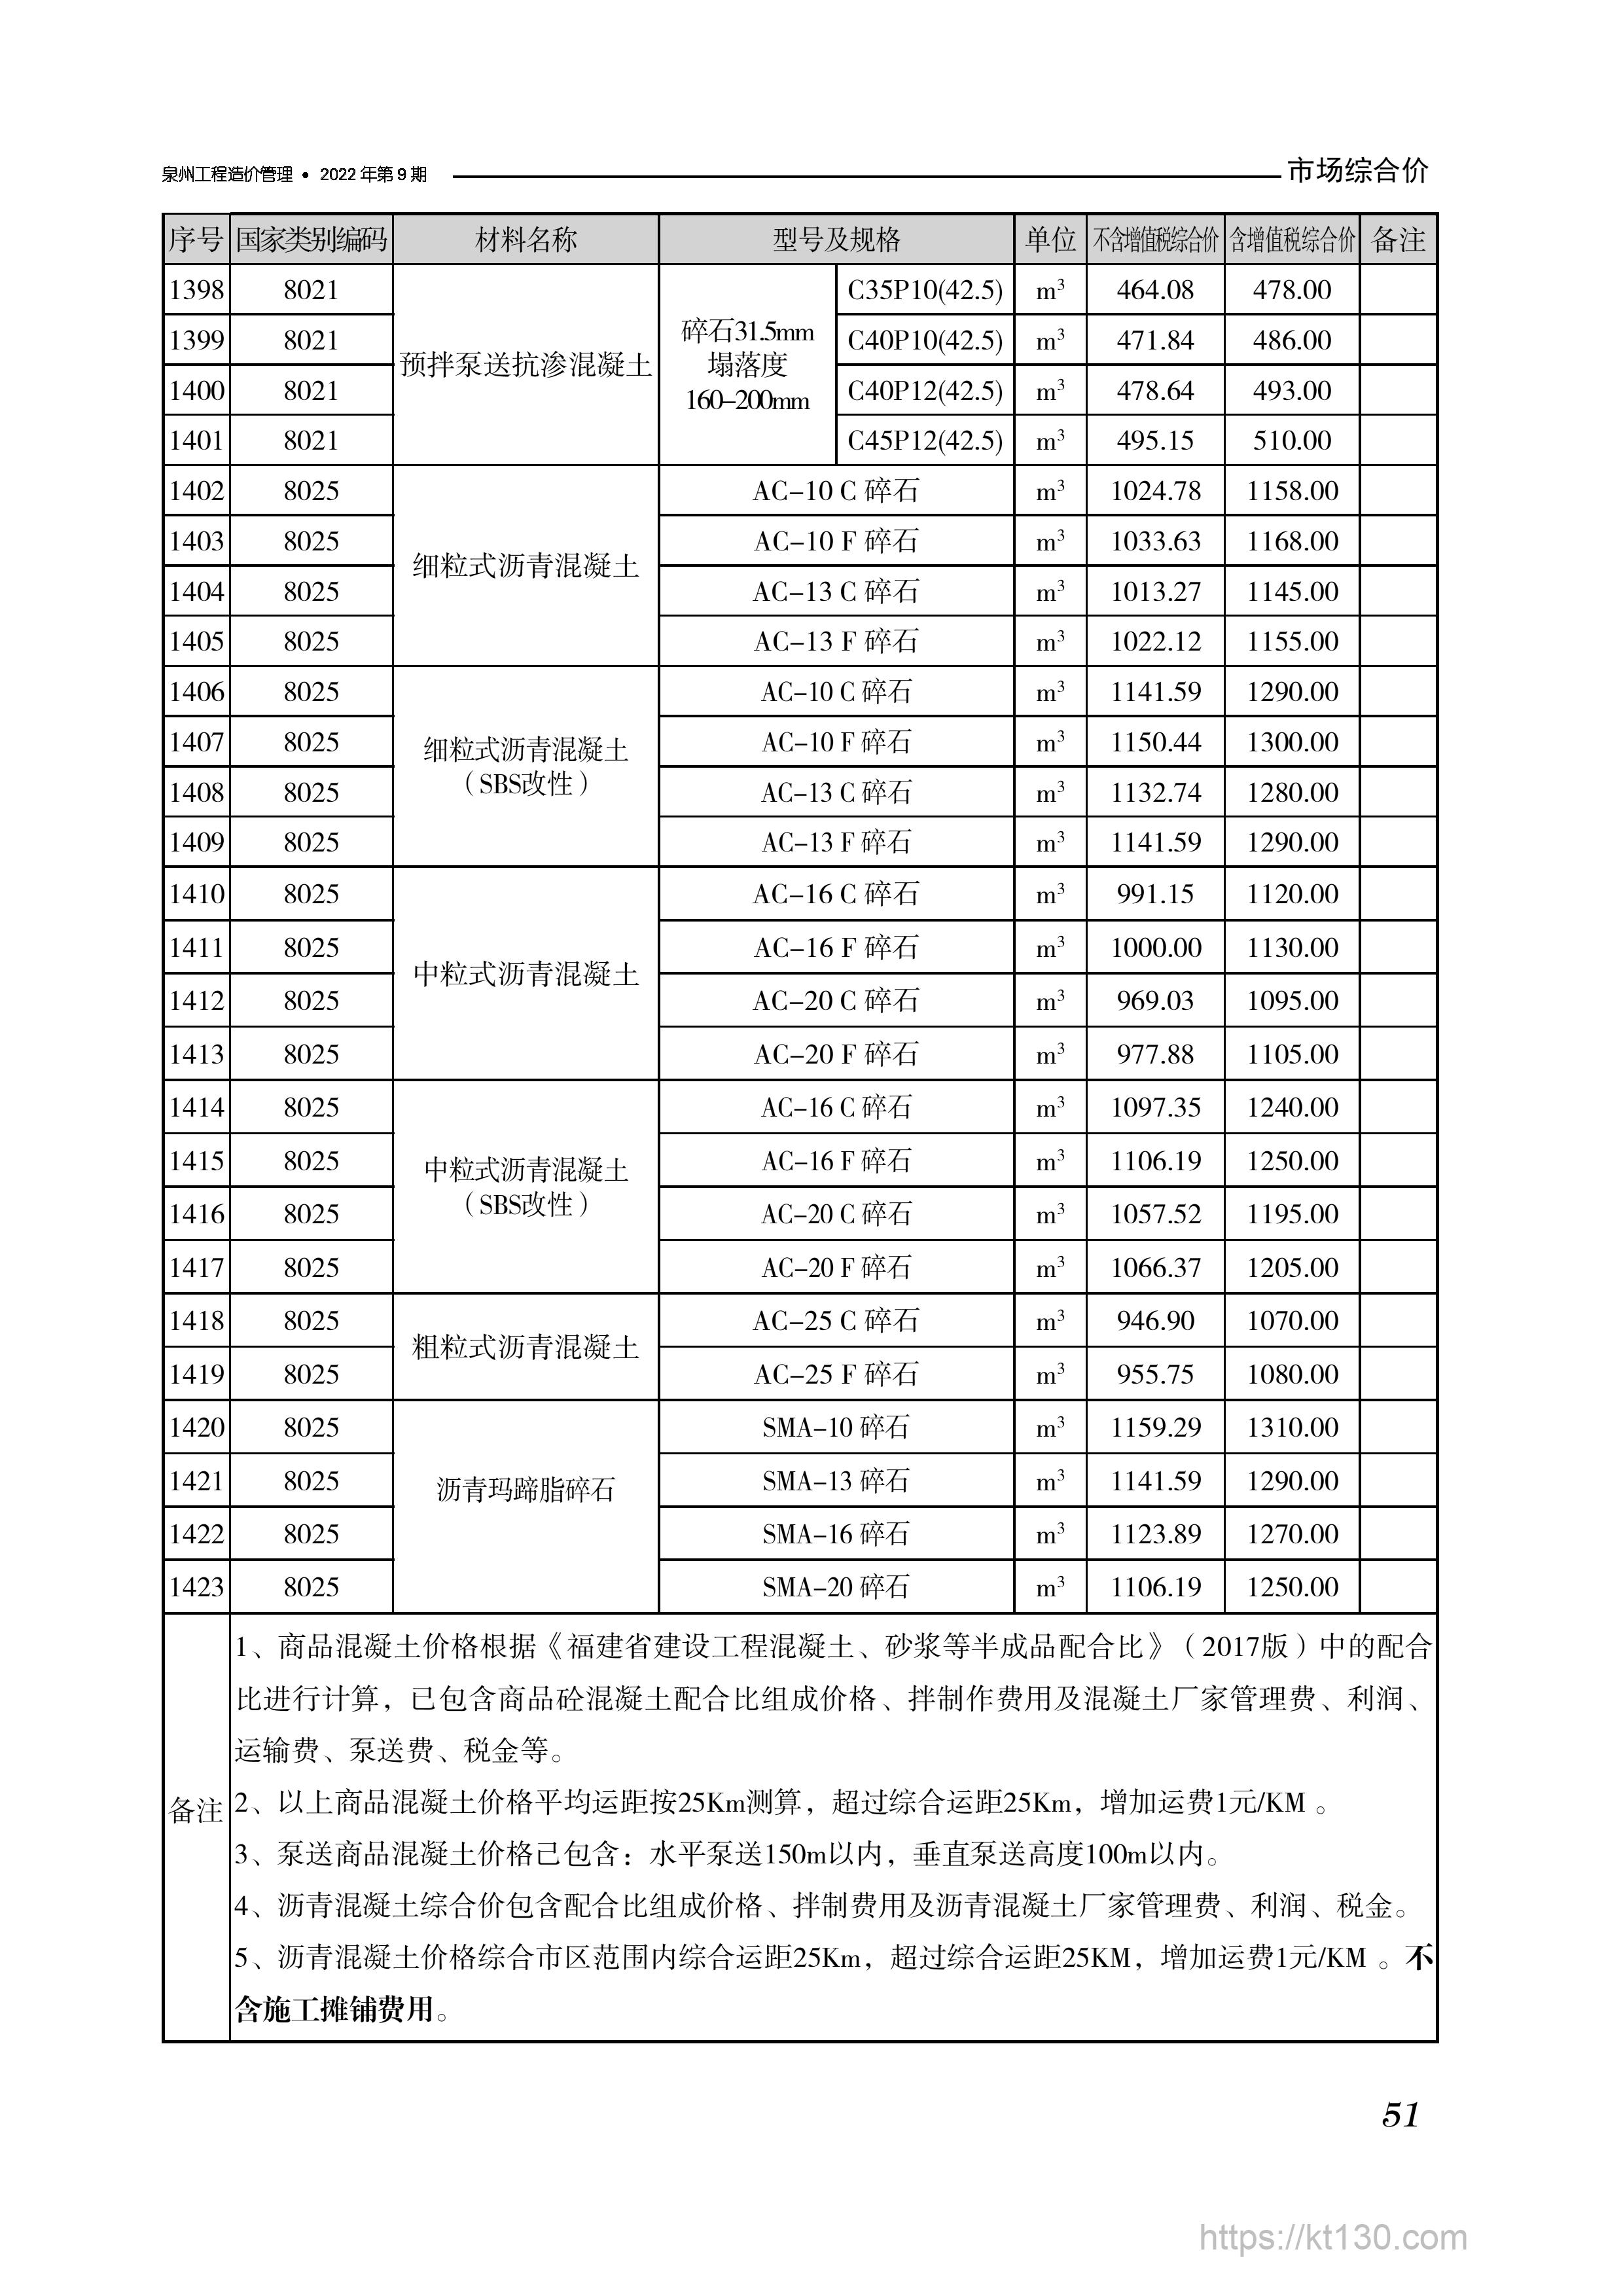 福建省泉州市2022年9月份混凝土、砂浆及其他配合比材料刊载价